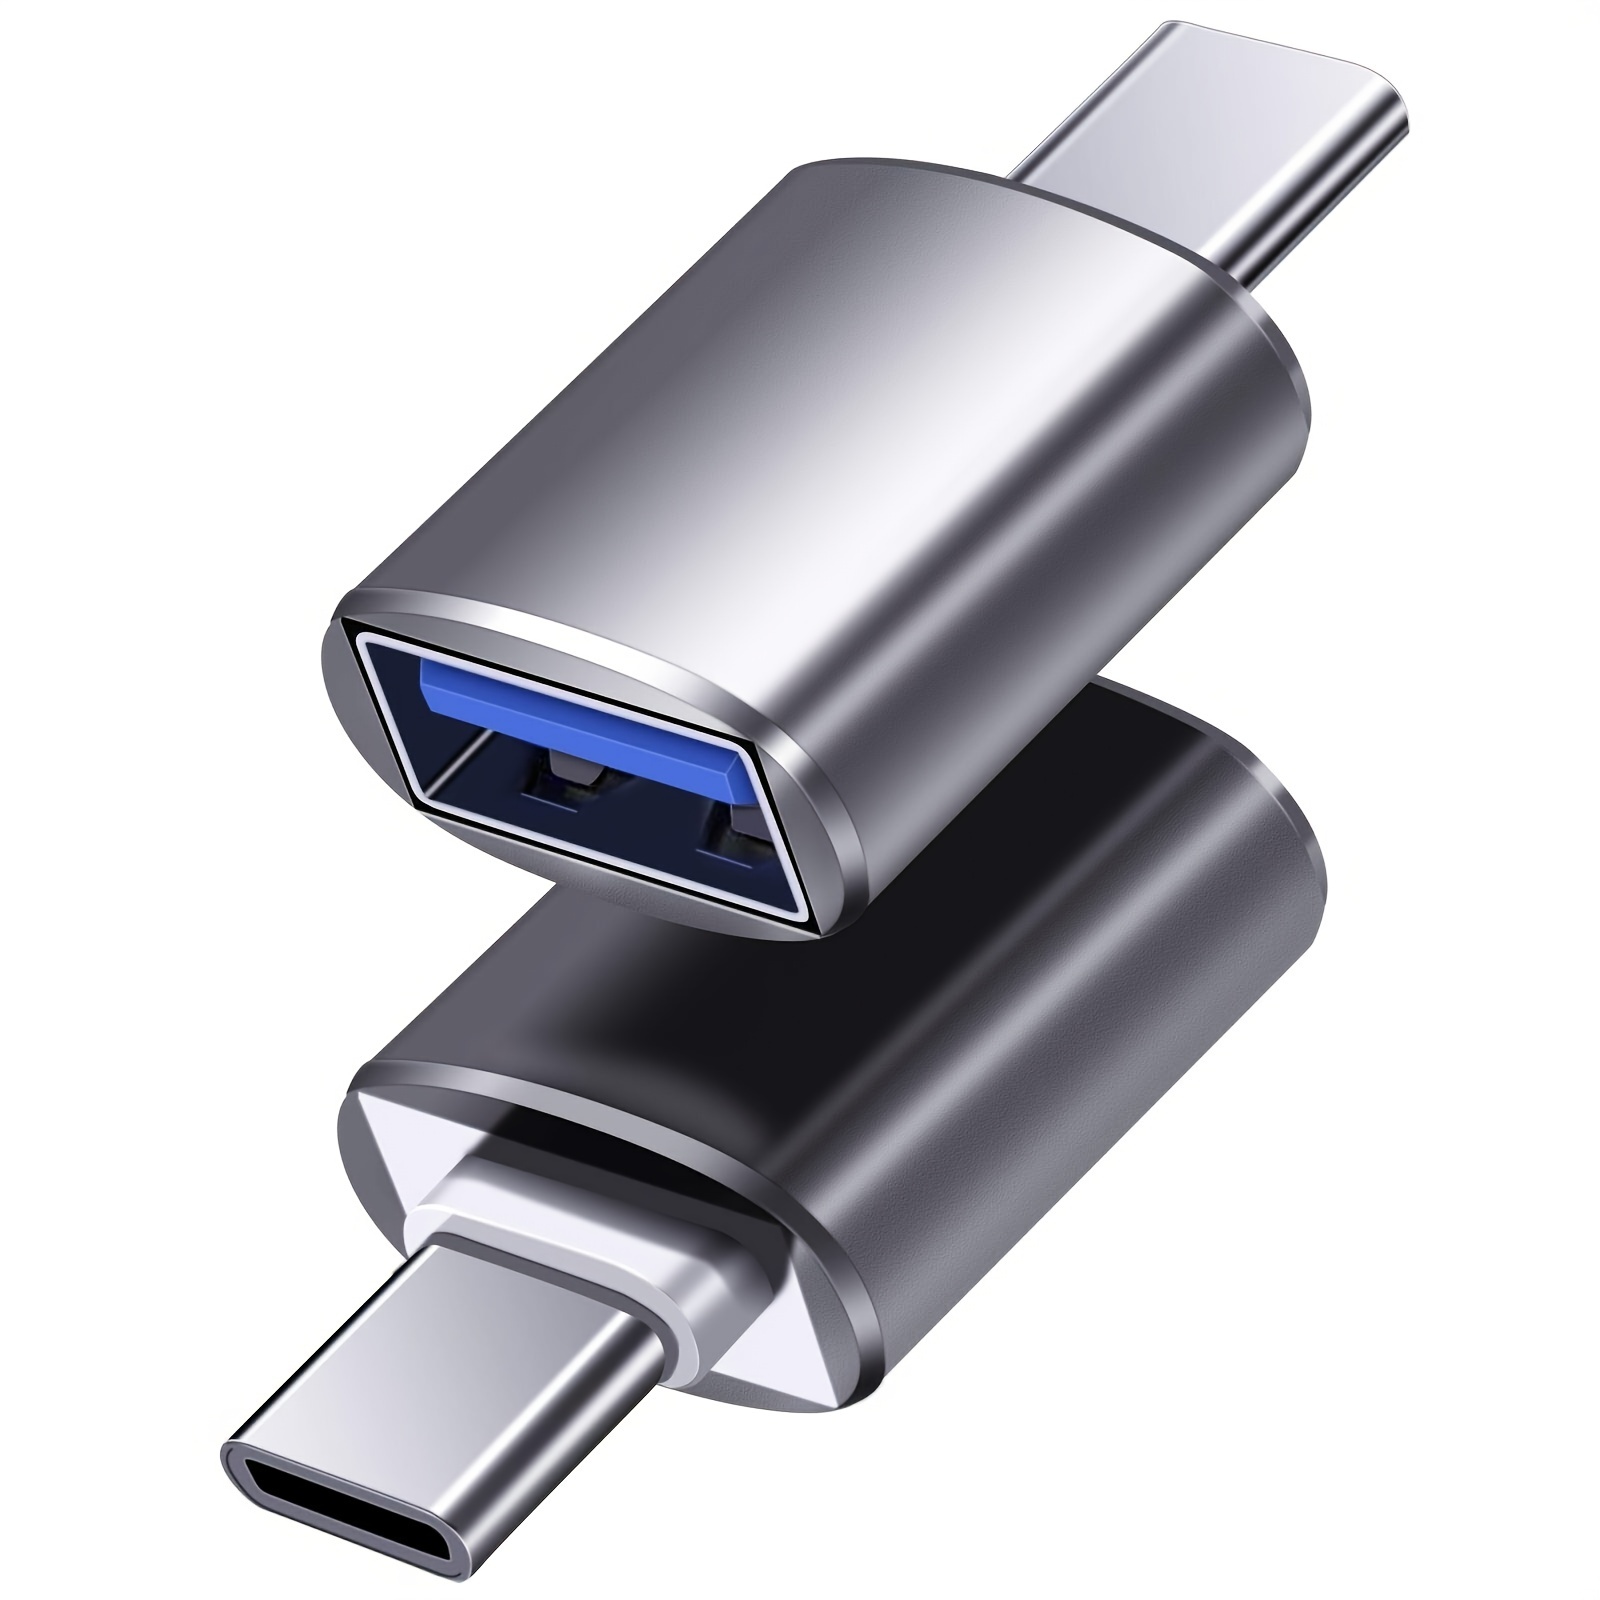 Adaptador USB C a USB 3.0 [paquete de 3], adaptador USB-C a USB, USB tipo C  a USB, adaptador Thunderbolt 3 a USB OTG cable para Macbook Pro/Air